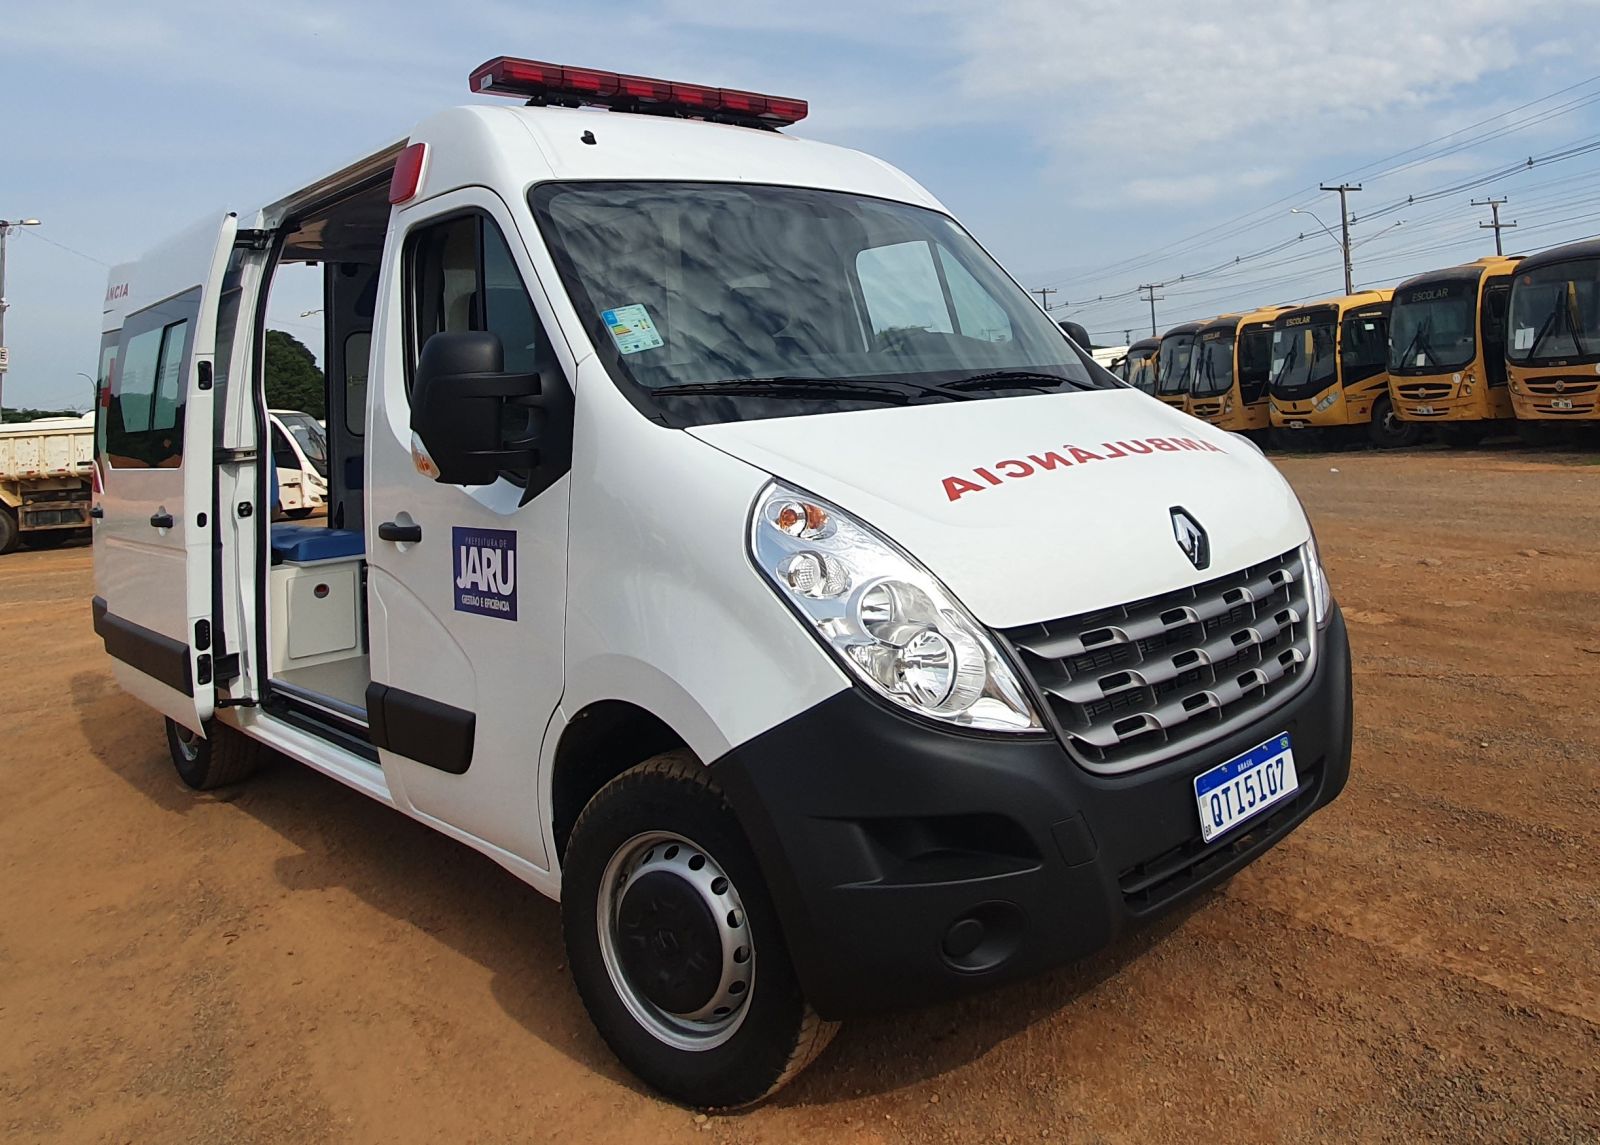 Prefeitura de Jaru adquire mais uma ambulância; veículo foi comprado em parceria com a câmara de vereadores - News Rondônia